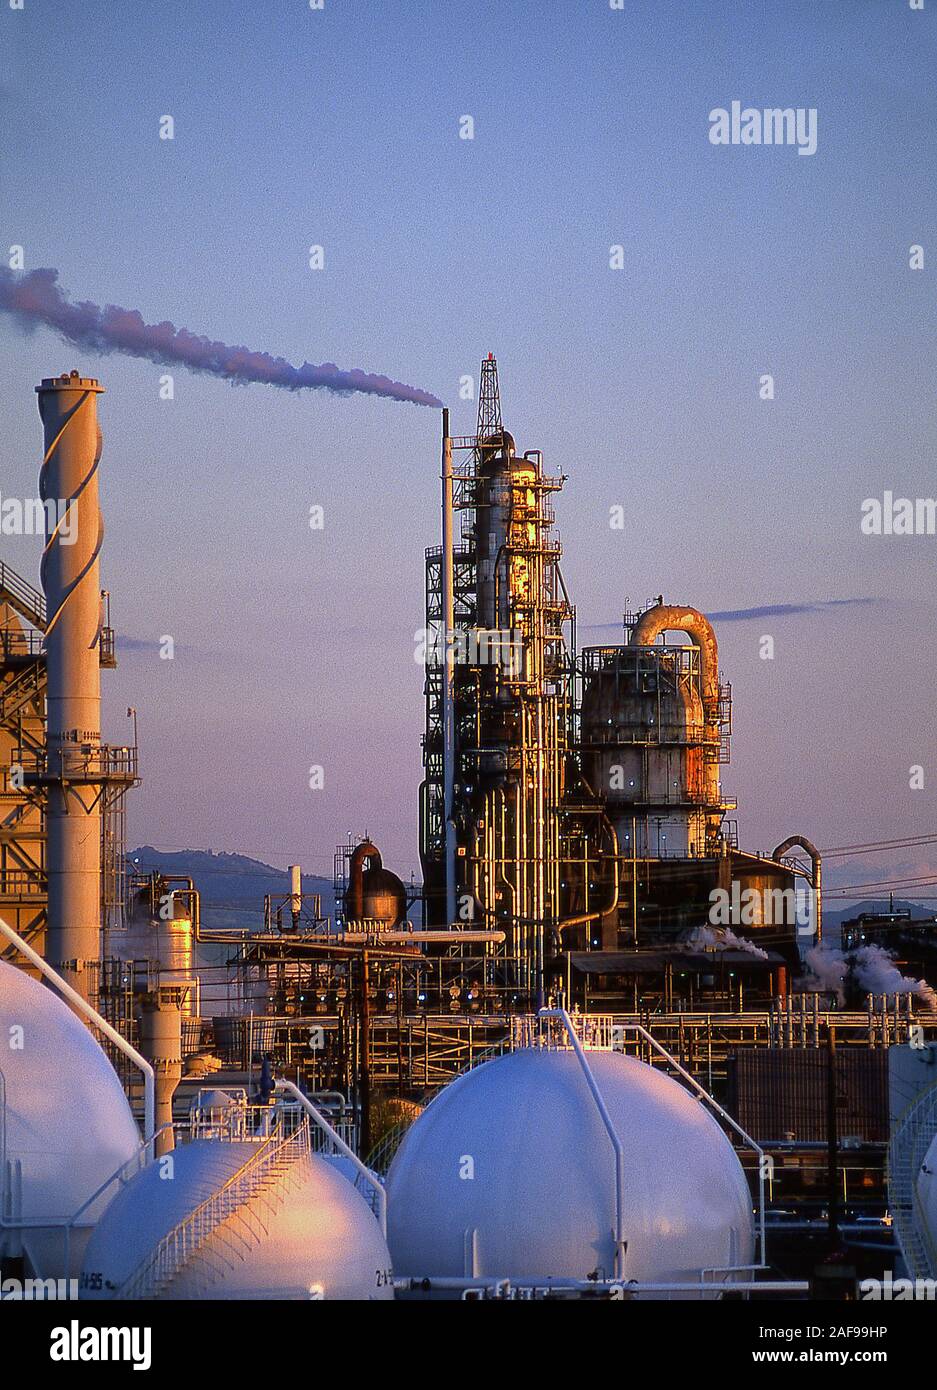 Raffineries de pétrole et production de combustible Banque D'Images